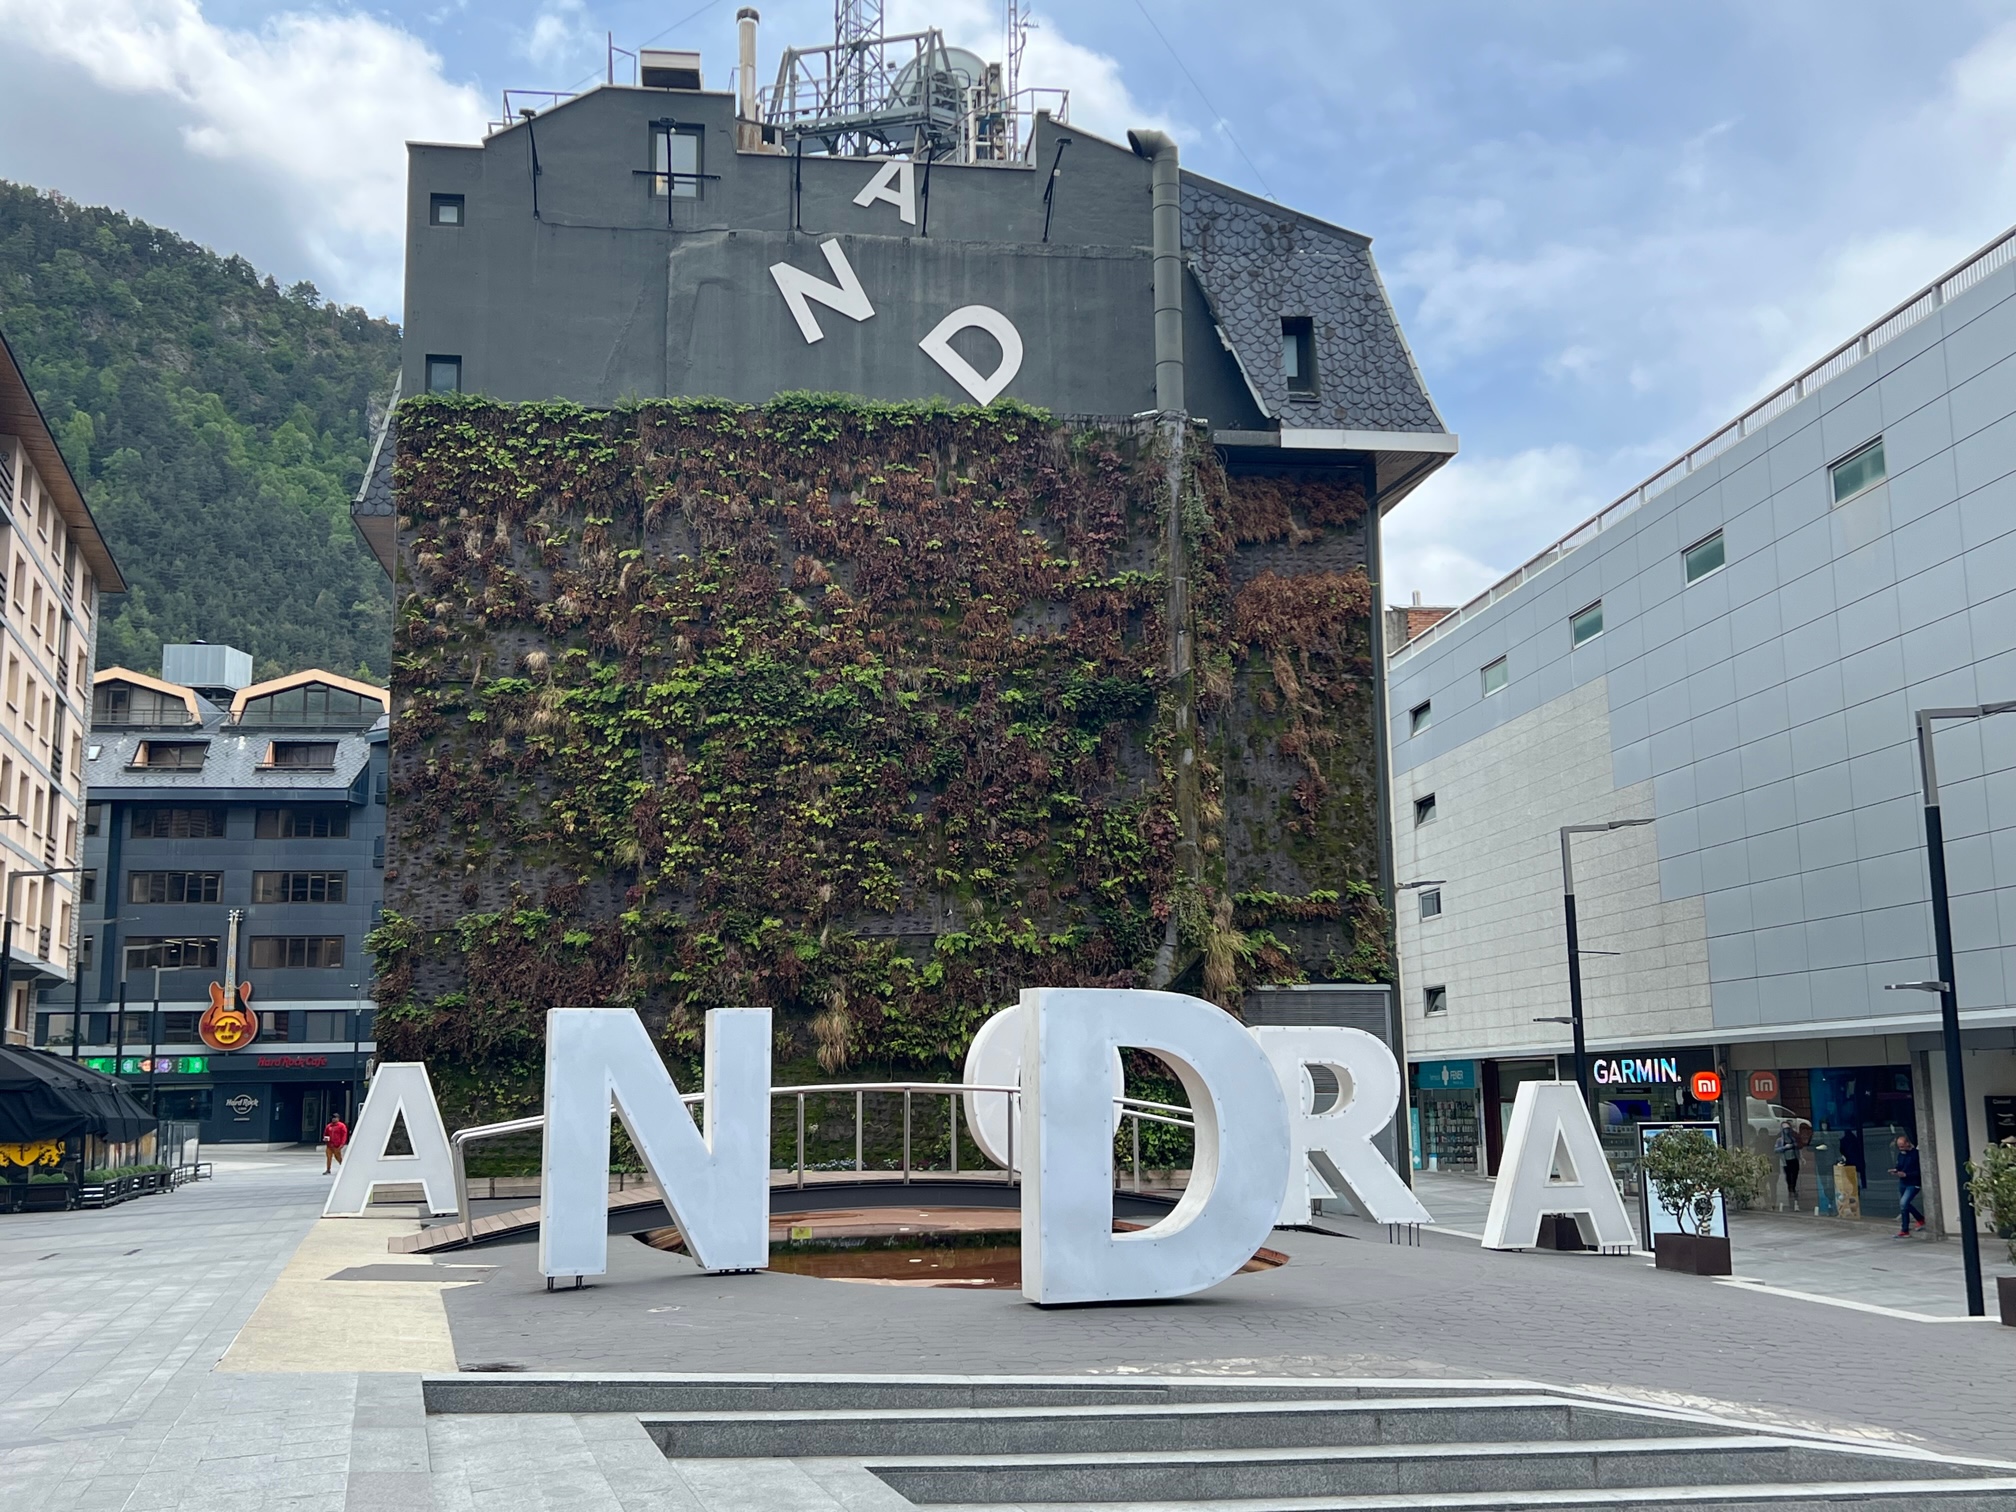 Andorra Travel Guide 2023